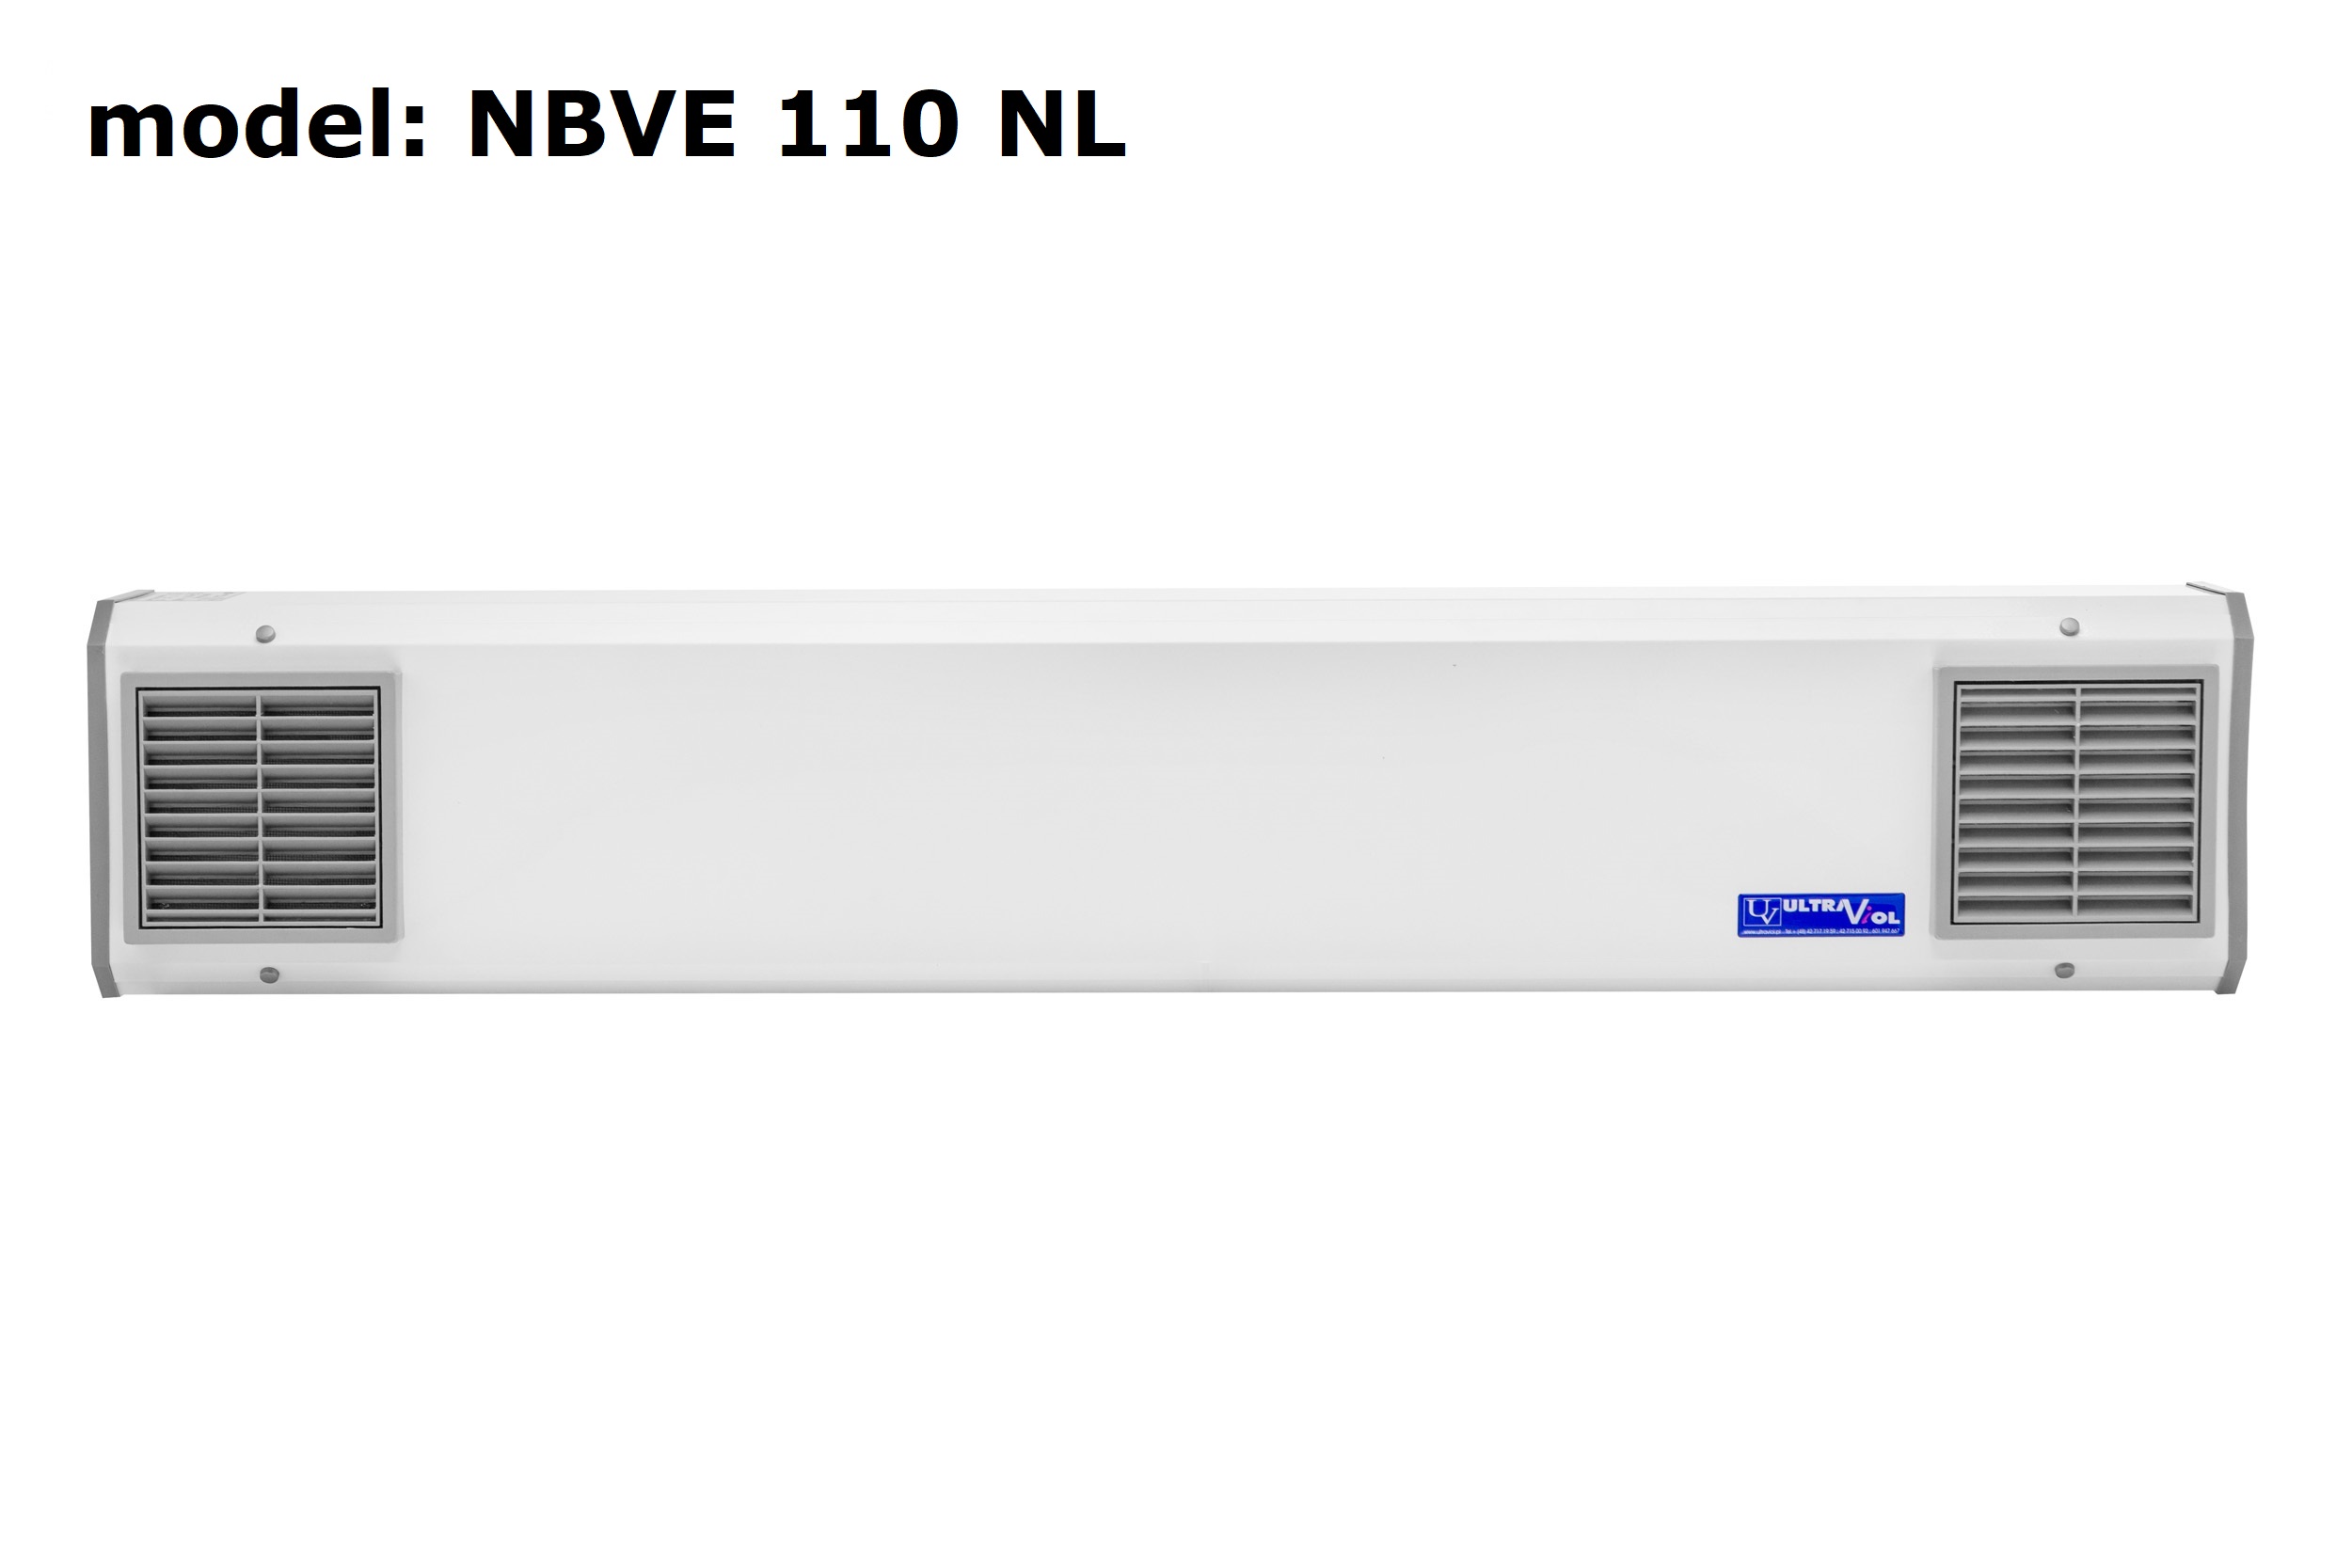 Lampy bakteriobójcze przepływowe ULTRAVIOL NBVE110